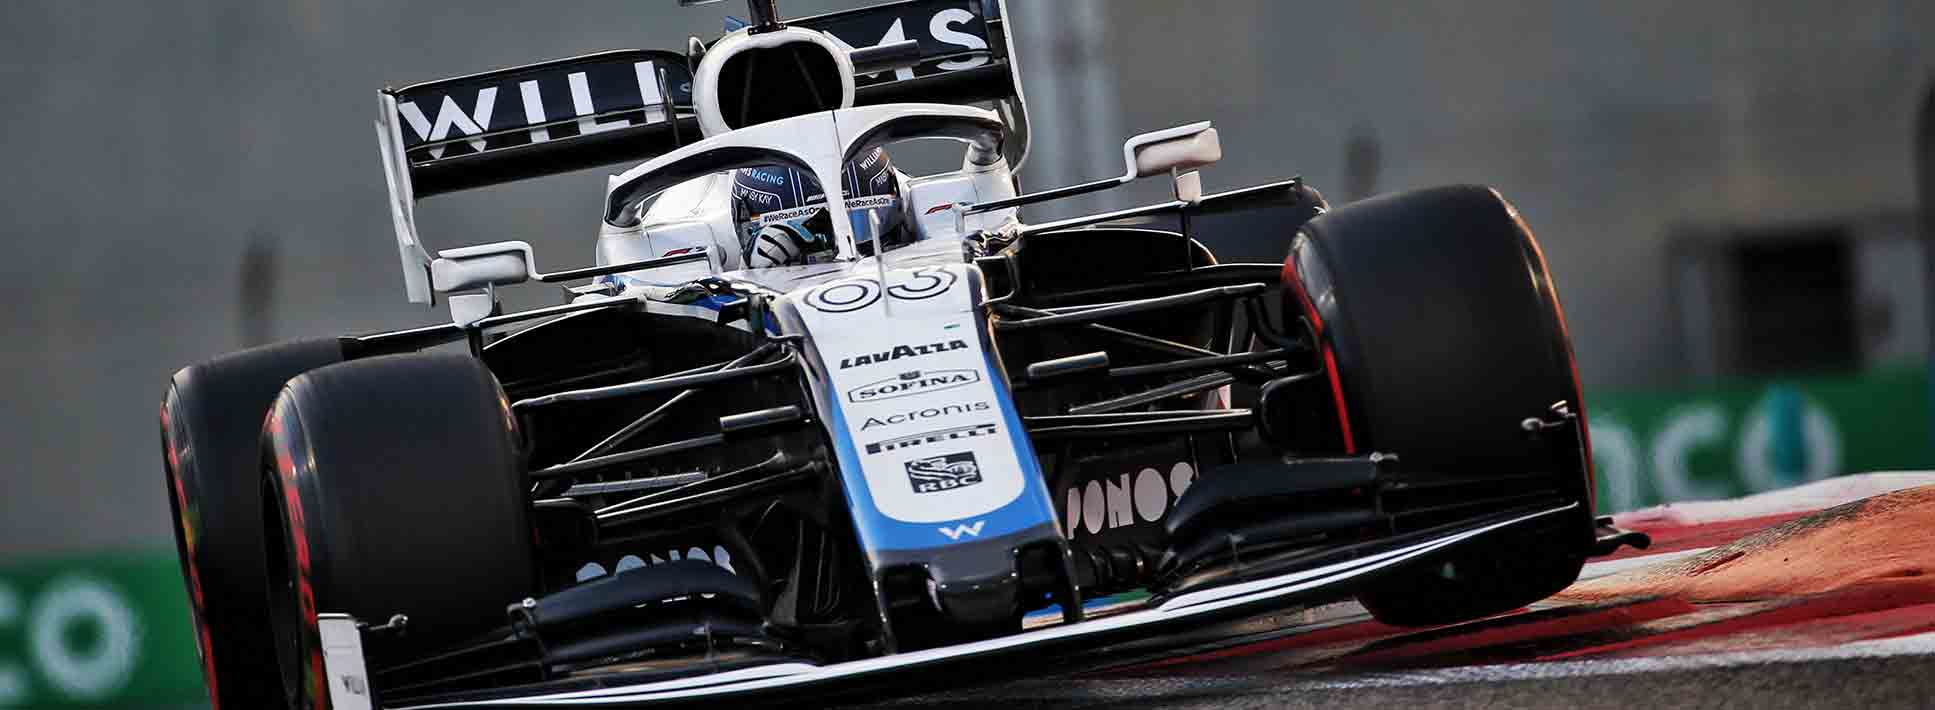 Williams Racing y Mercedes expanden su colaboración técnica